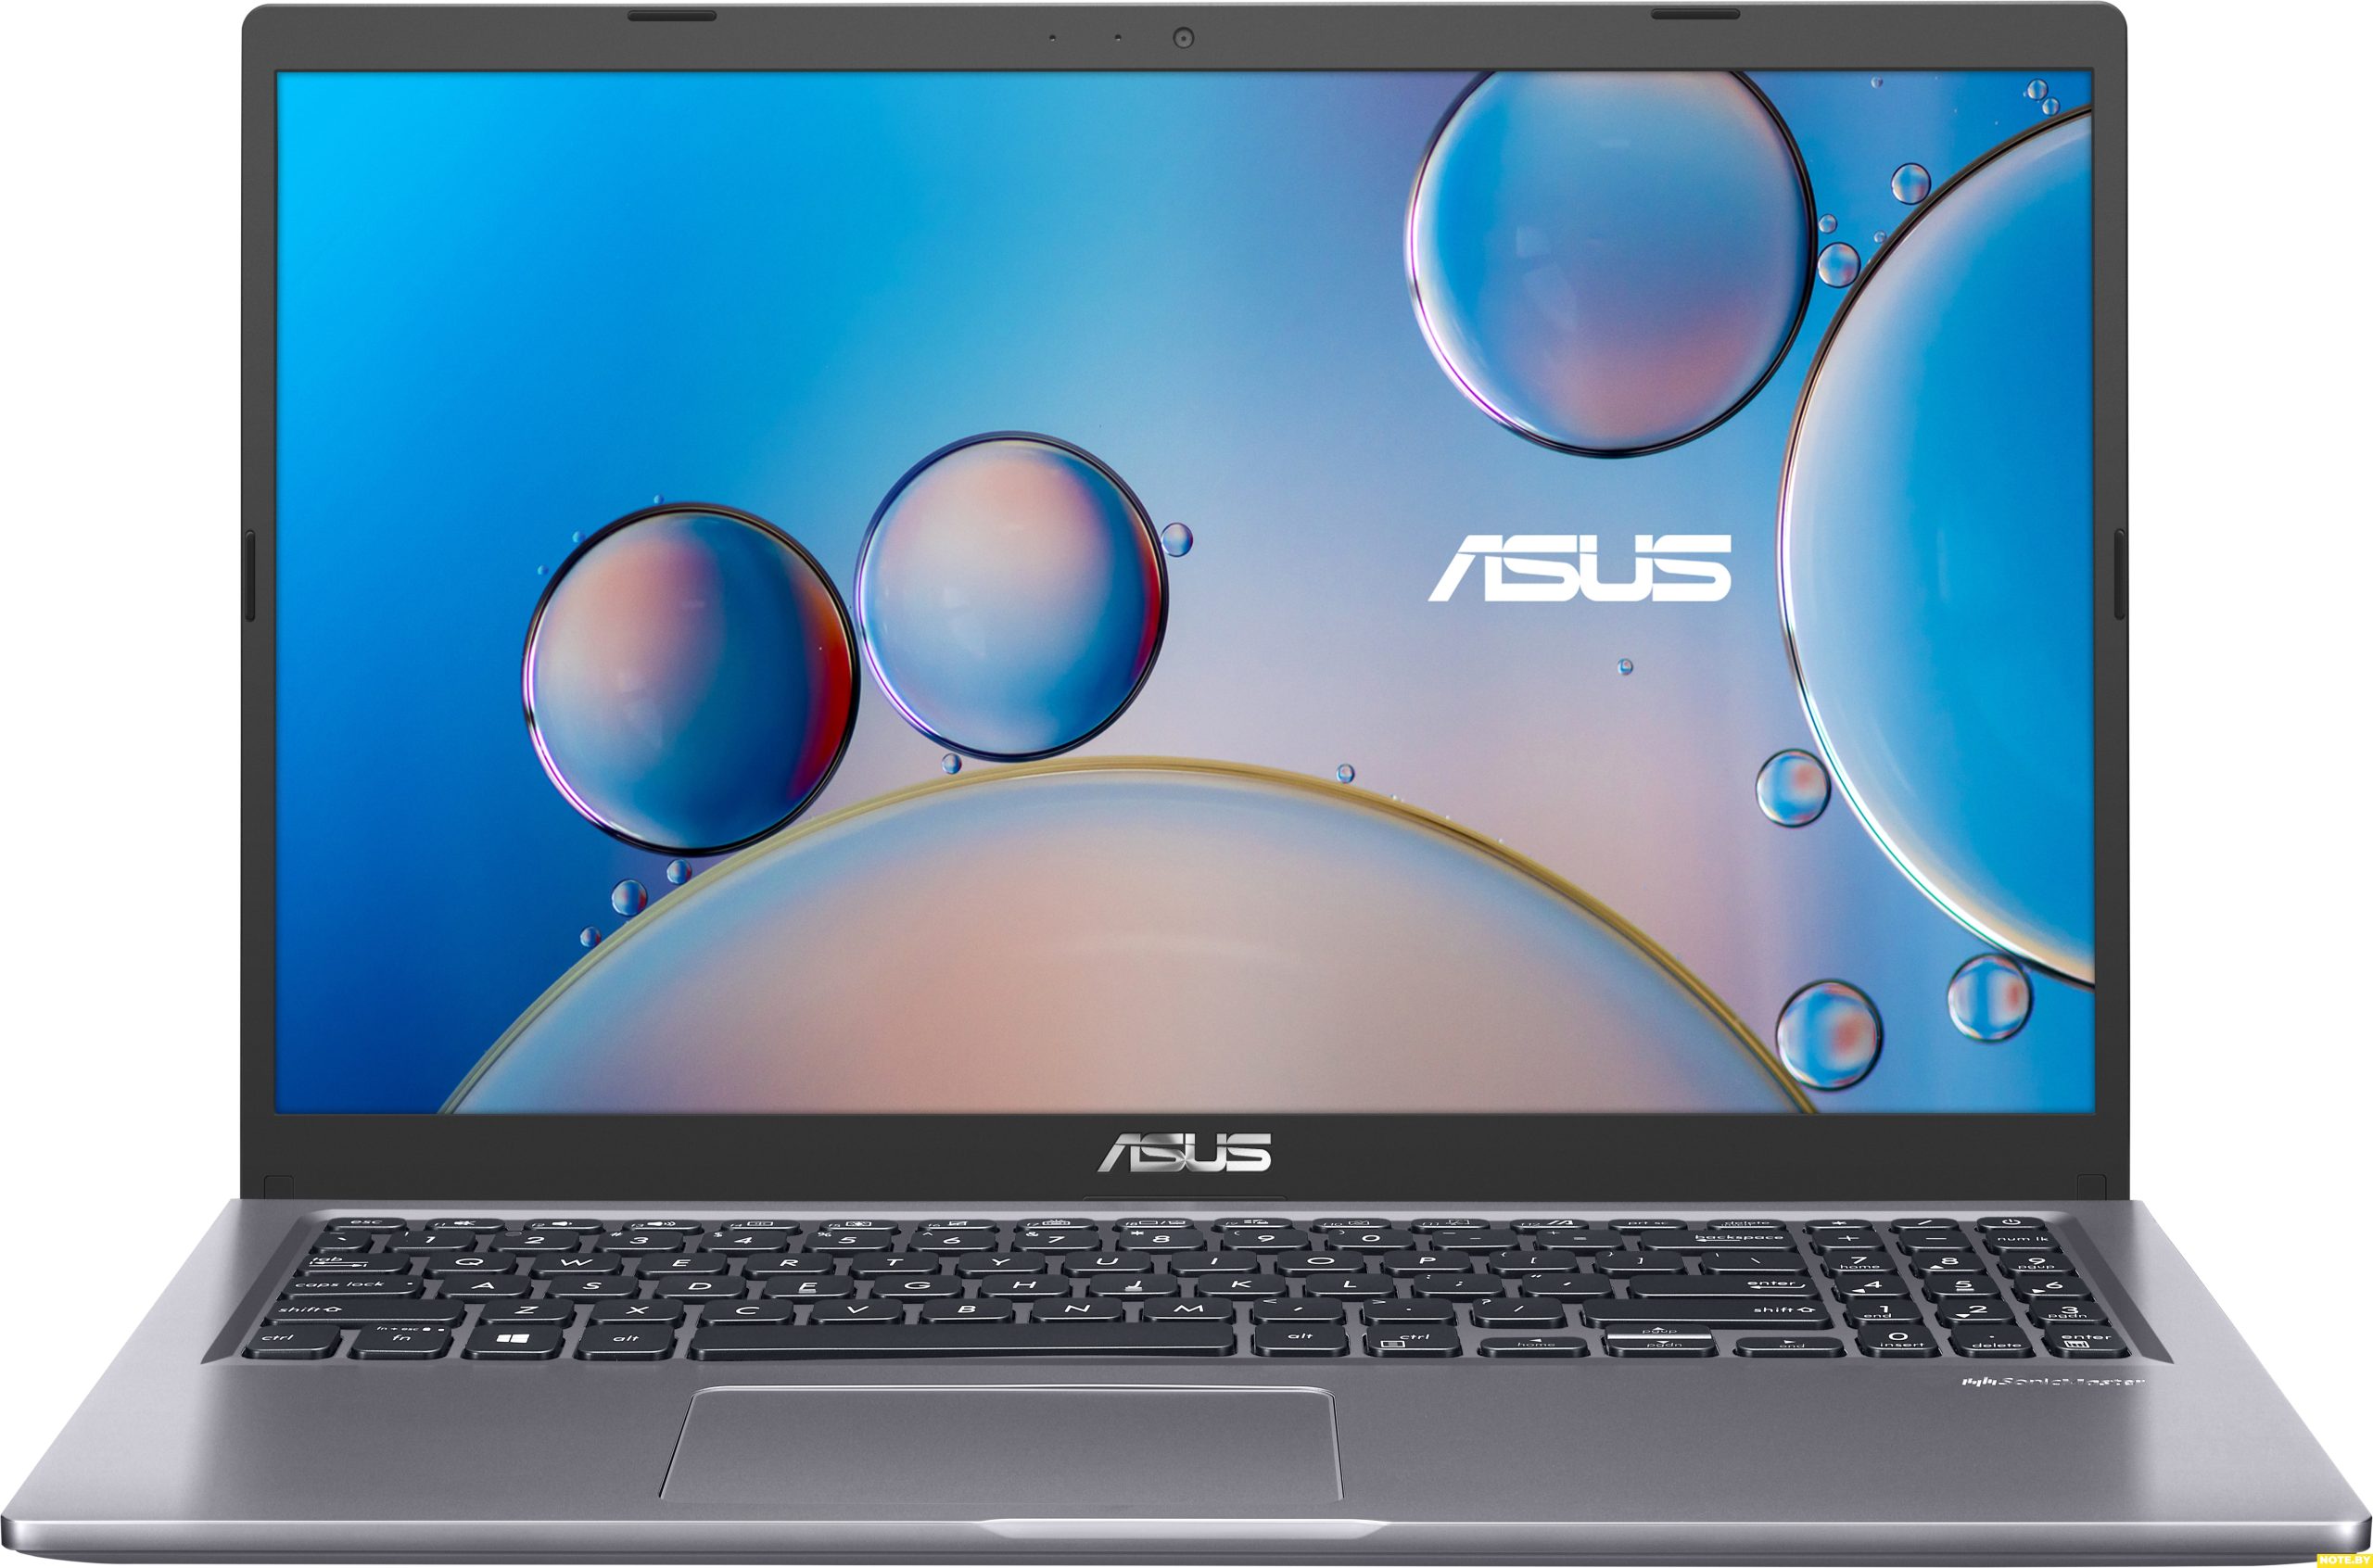 Ноутбук ASUS M515DA-BQ438